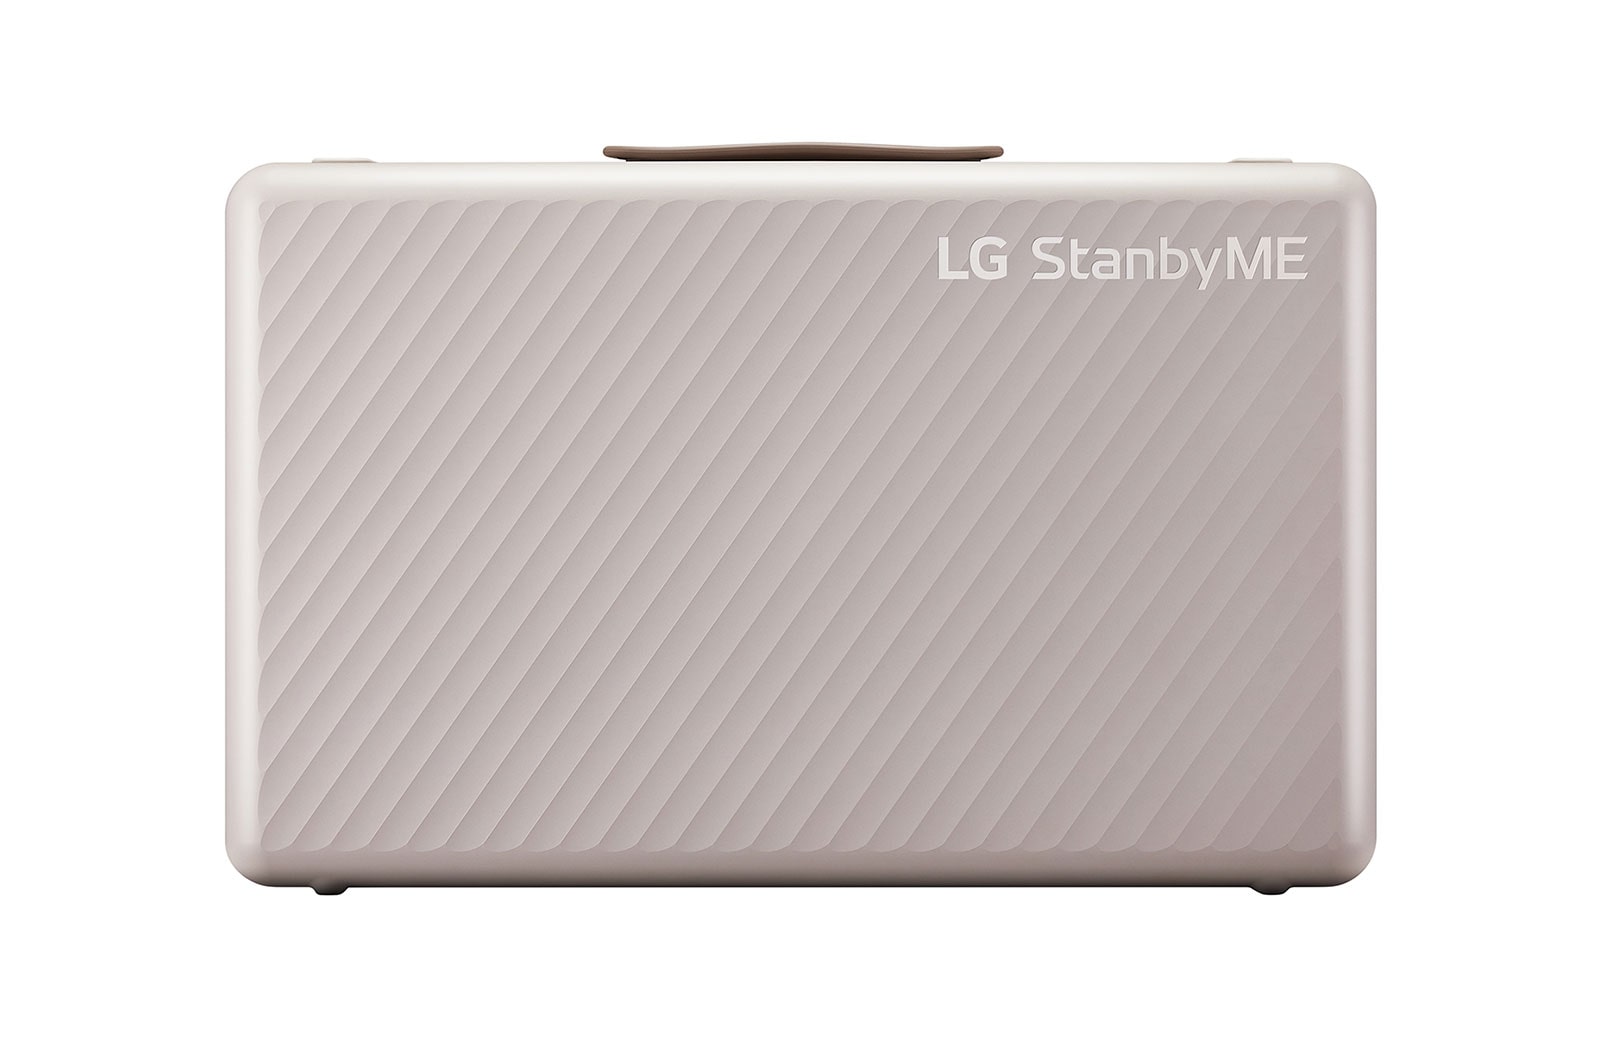 Đánh giá LG Thiết bị giải trí xách tay LG StanbyME Go